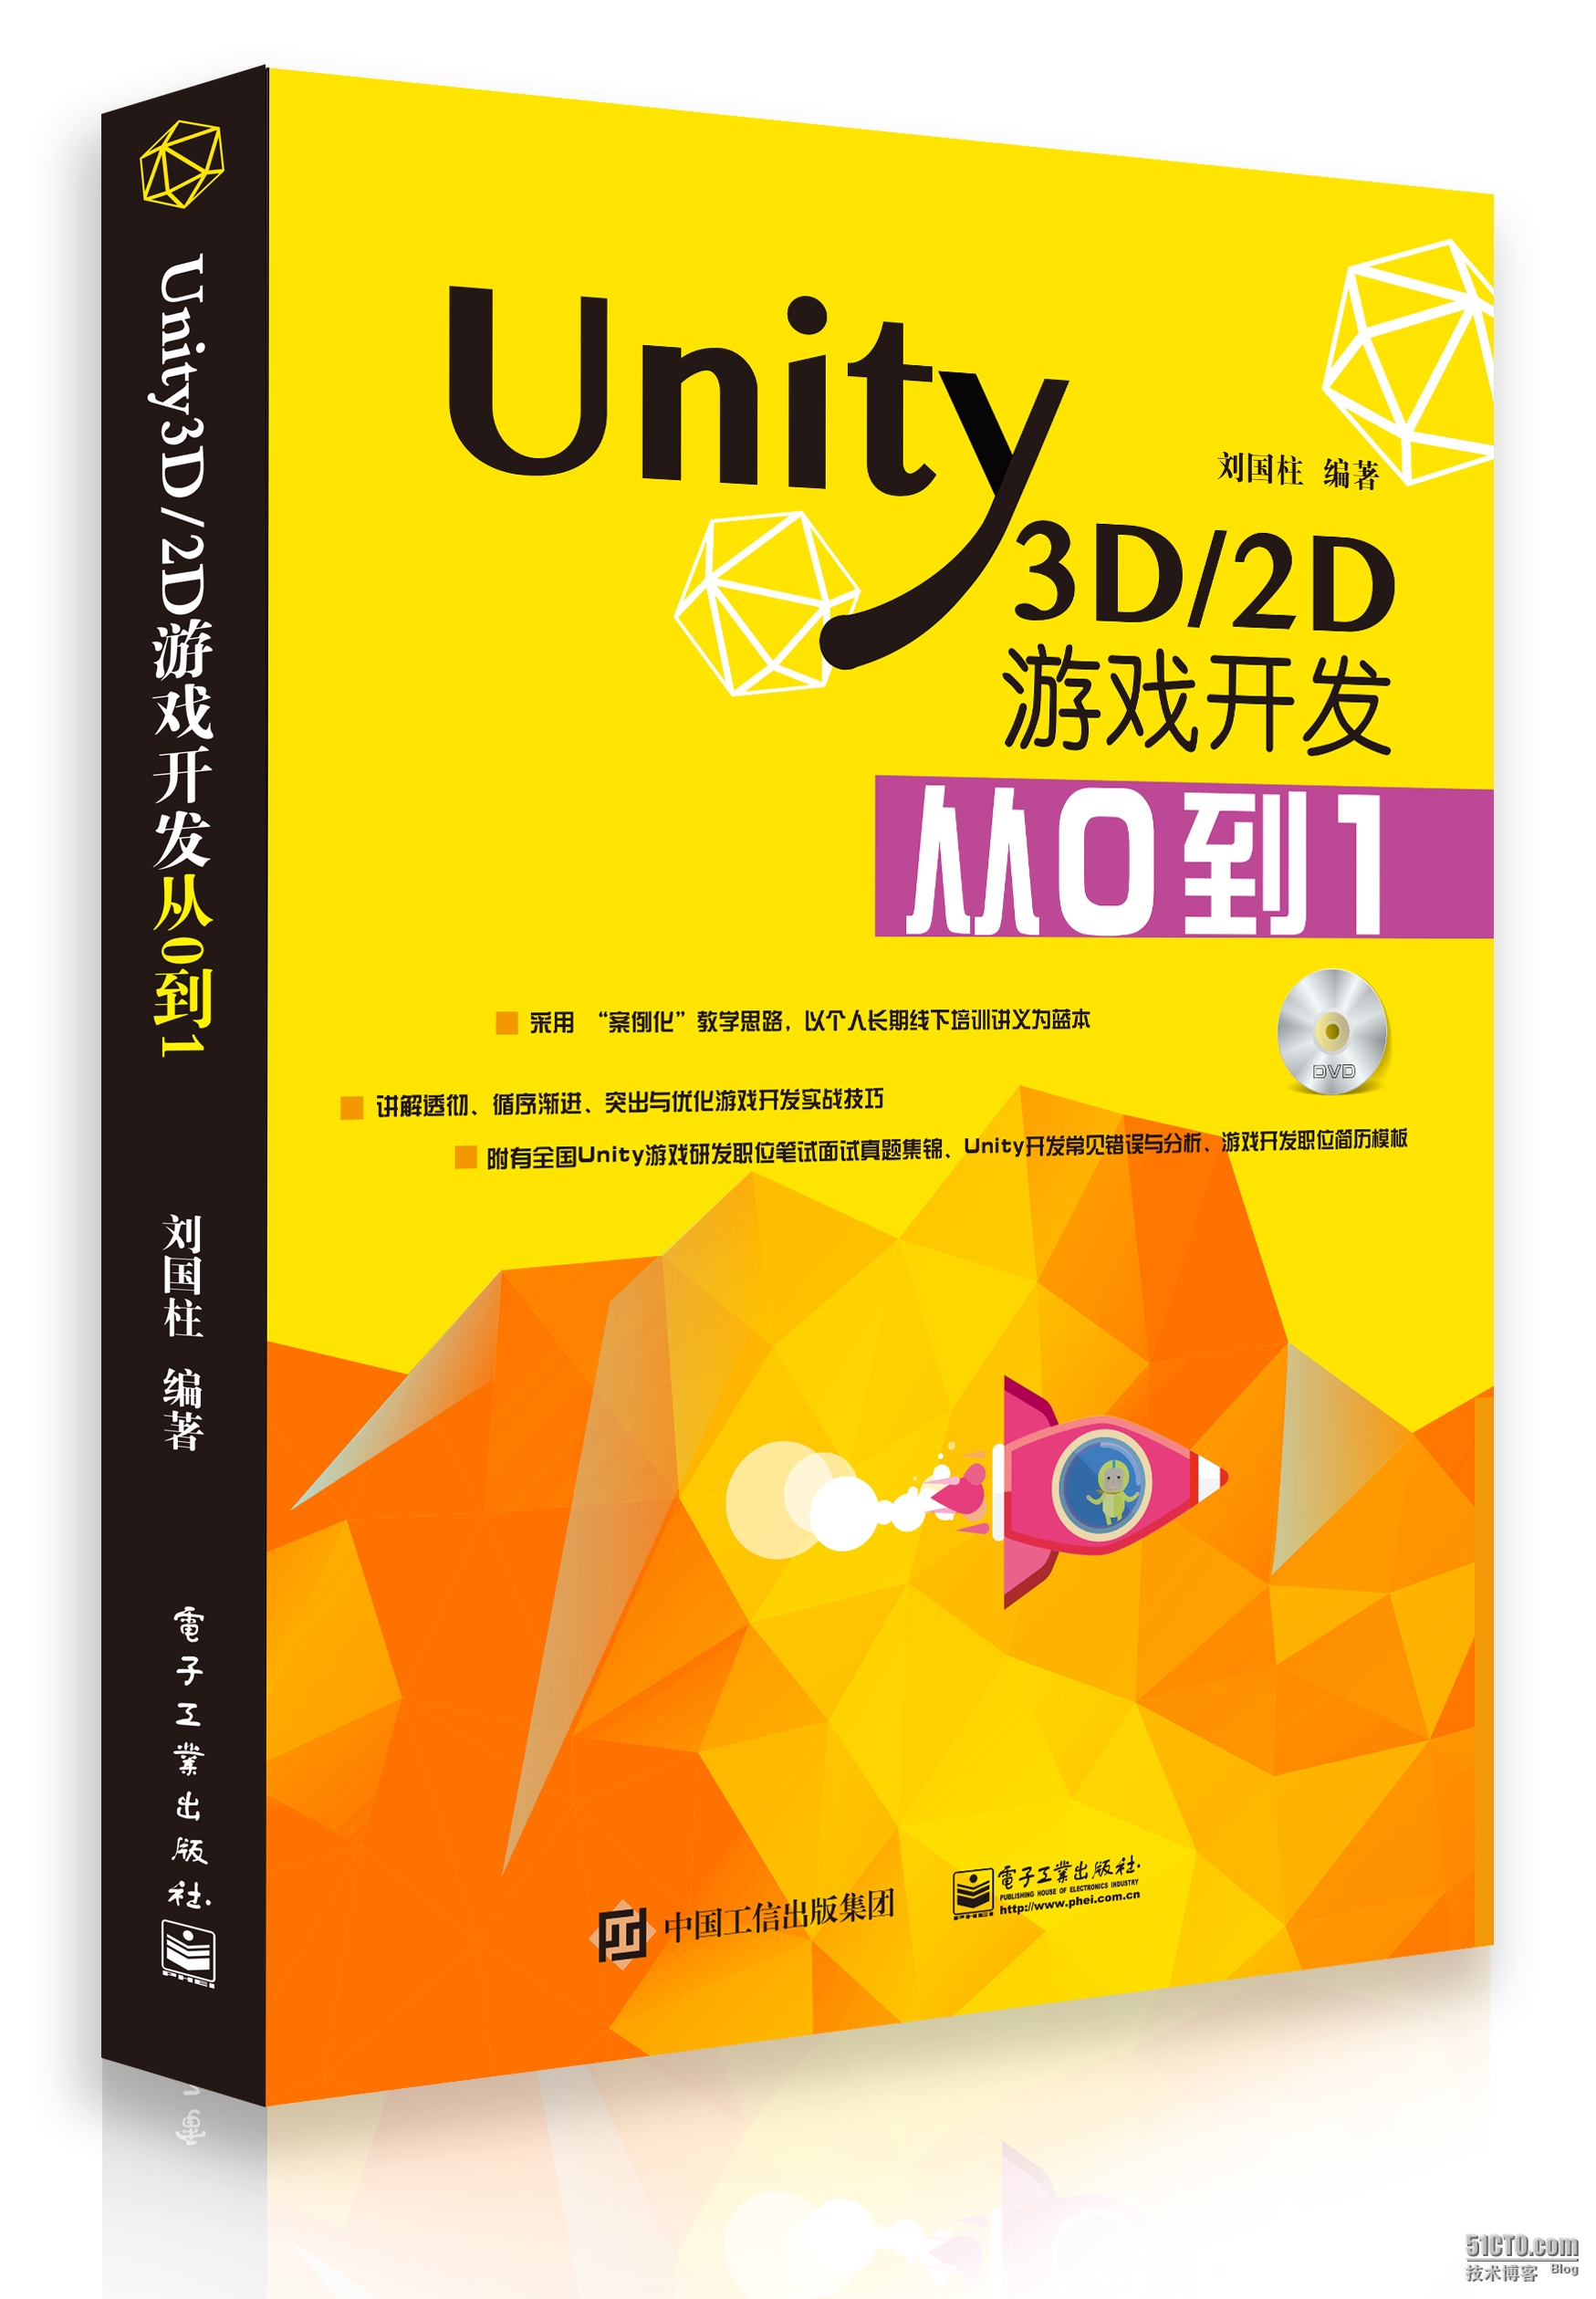 《Unity3D/2D游戏开发从0到1》正式出版发行啦_刘老师讲Unity